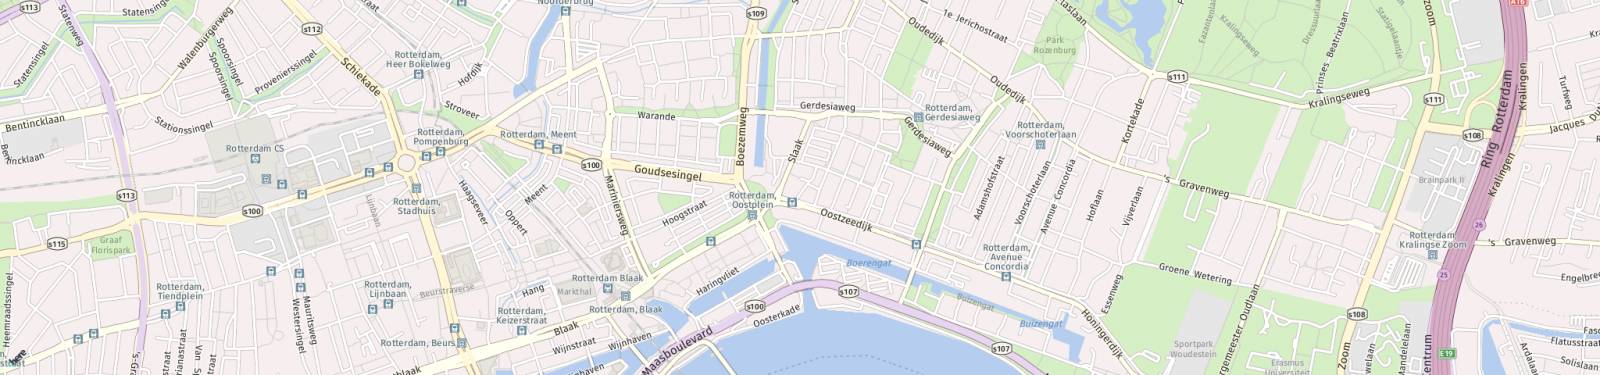 Kaart met locatie Appartement Jacques Perkstraat